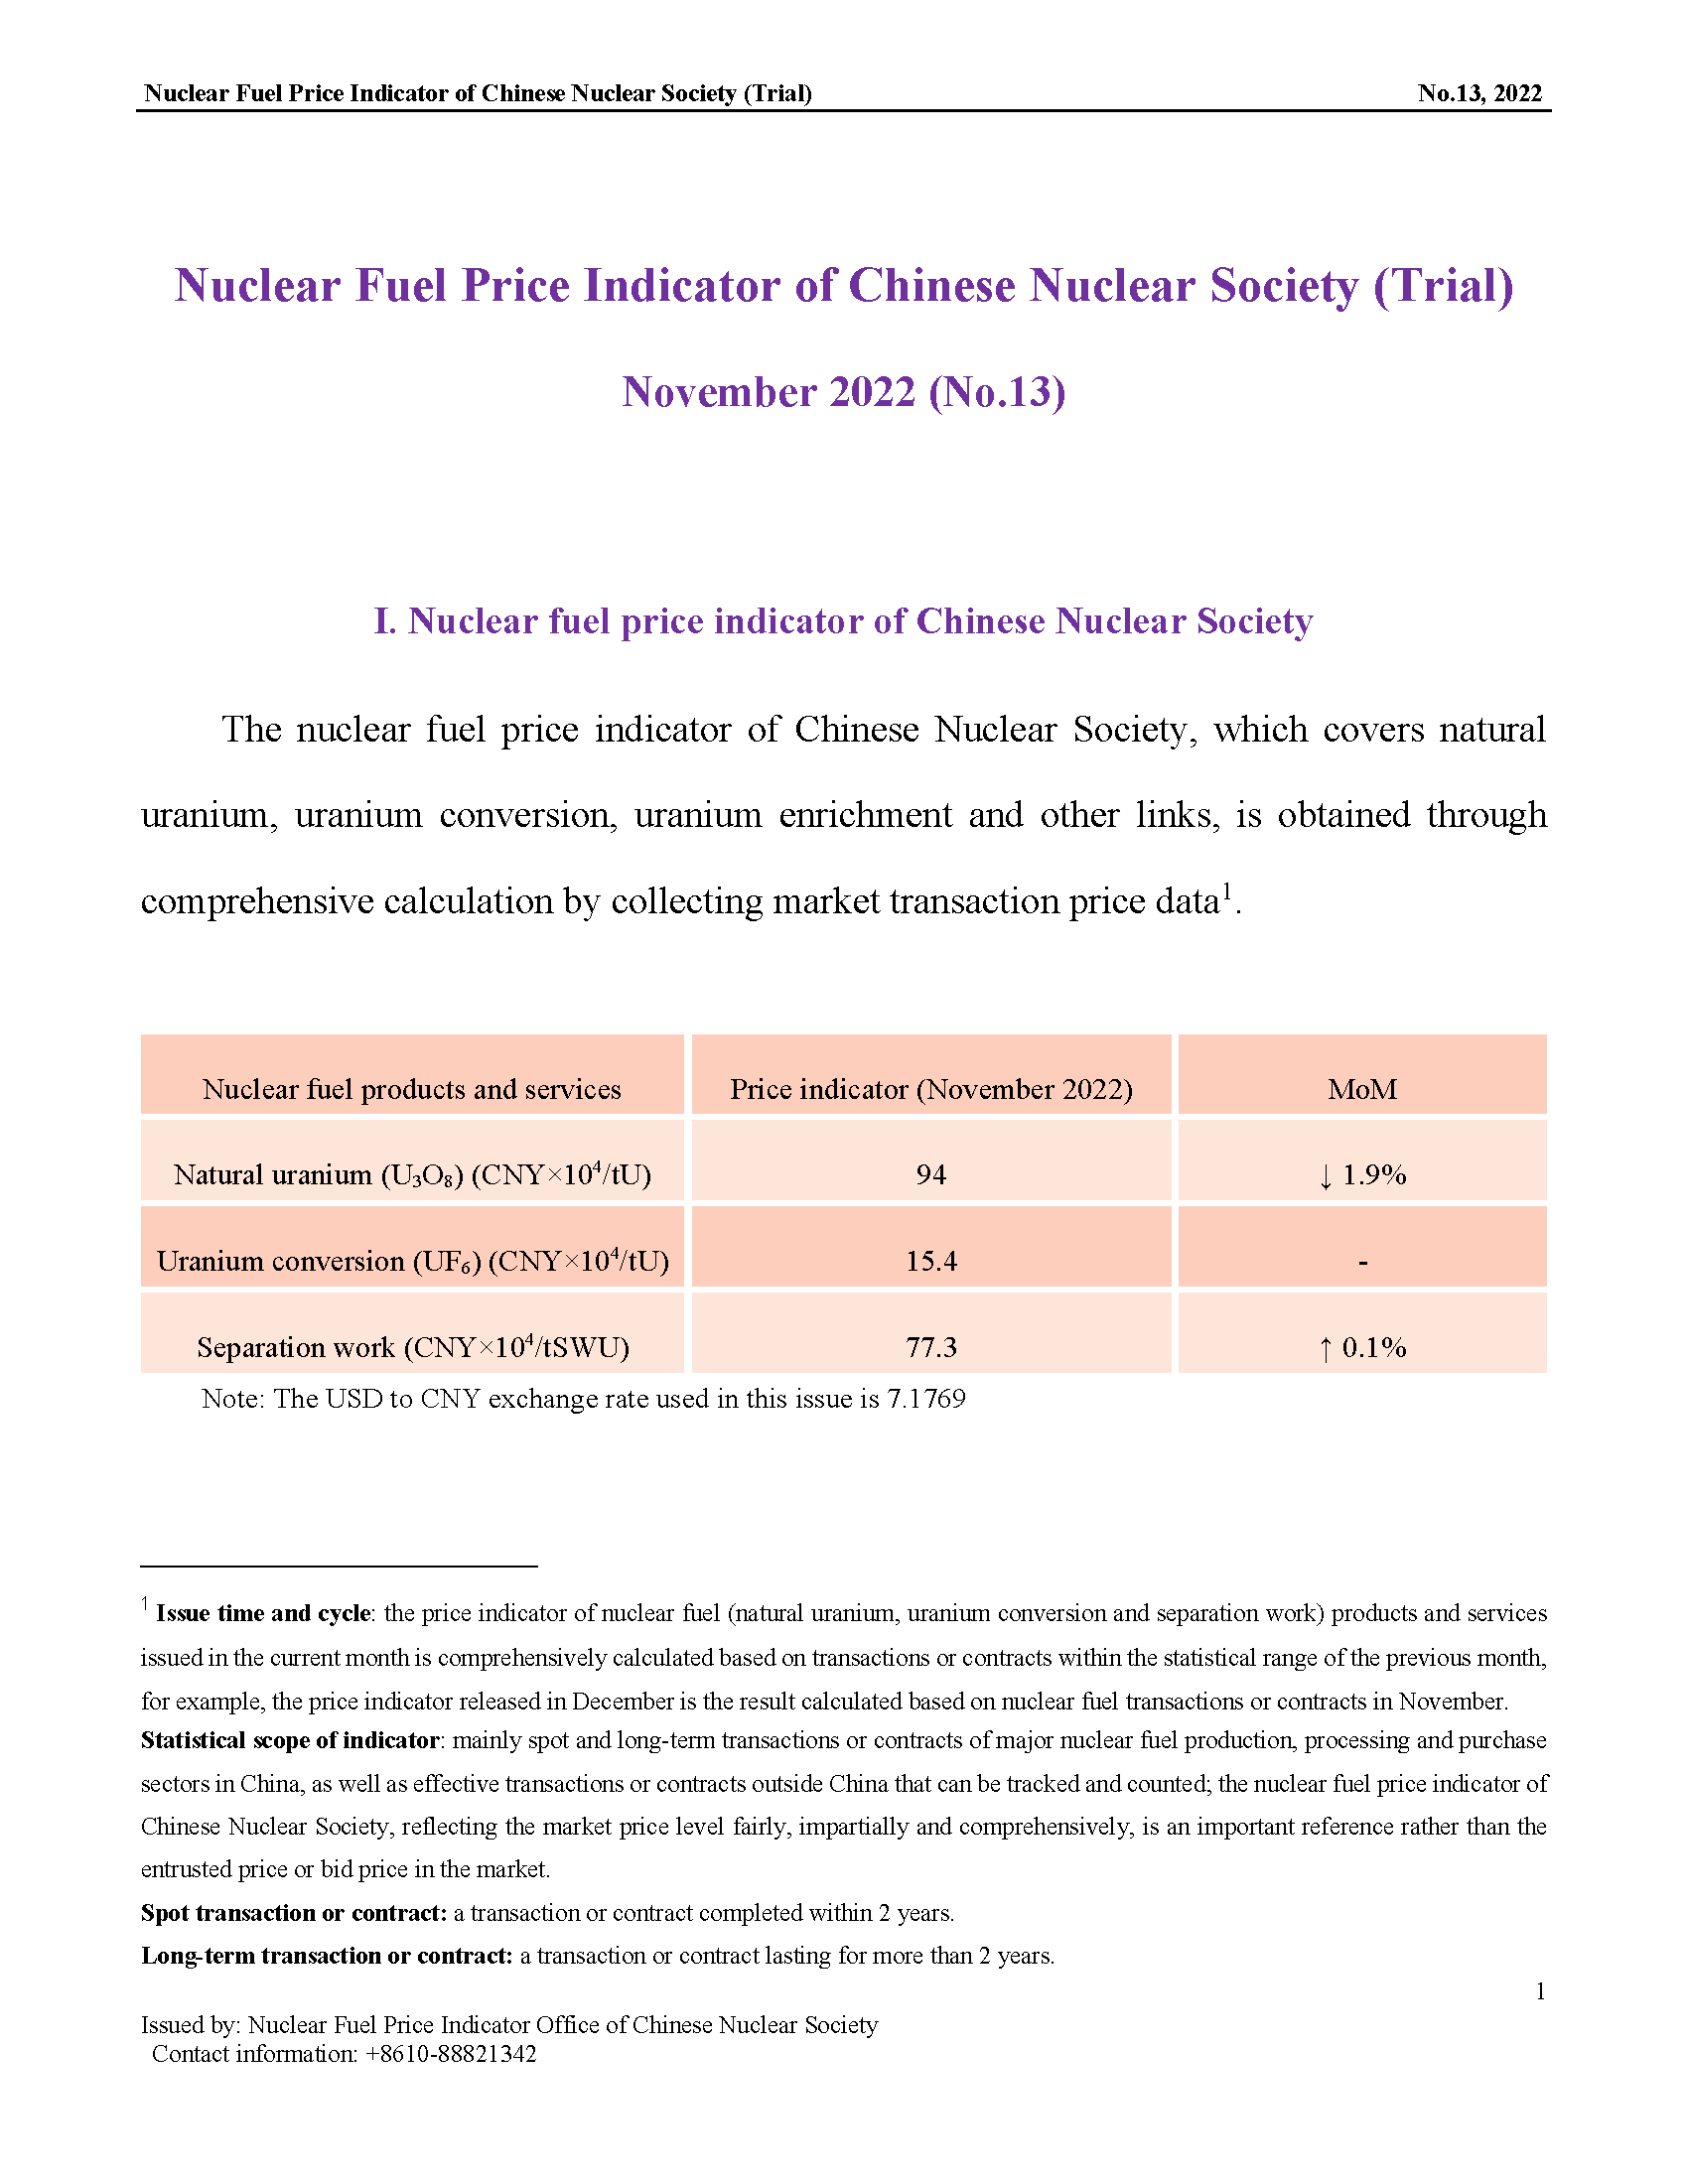 中国核学会核燃料价格指数(试运行)（2022年12月,总第13期）(1) _EN_页面_1.png